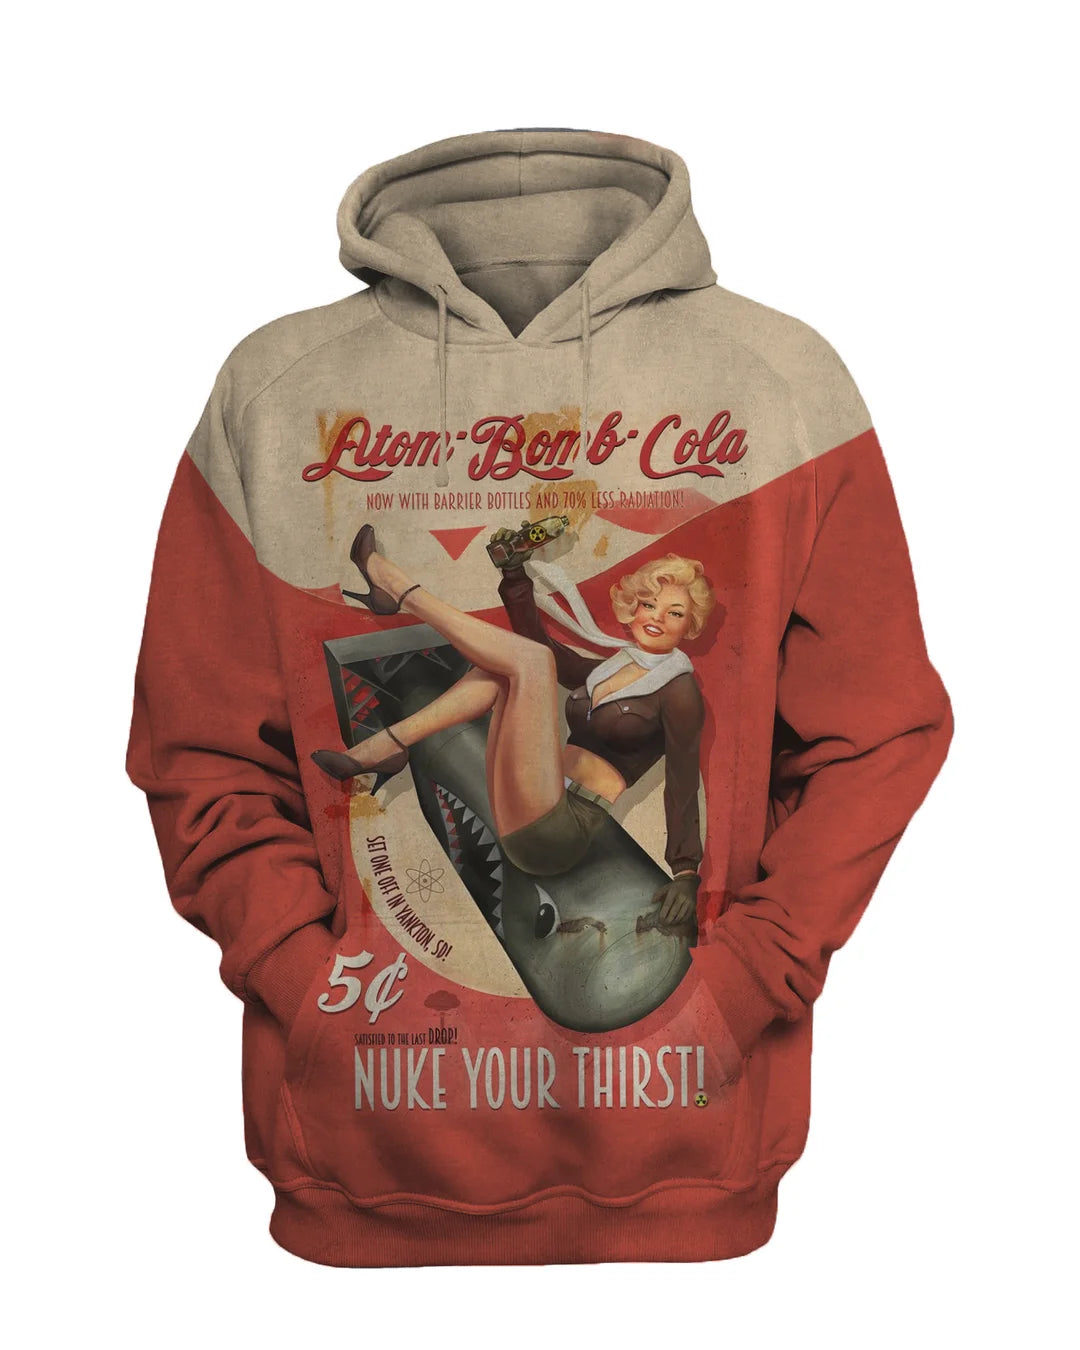 Atom Bomb Cola Fashion Retro Casual Sweatshirt Set - DUVAL